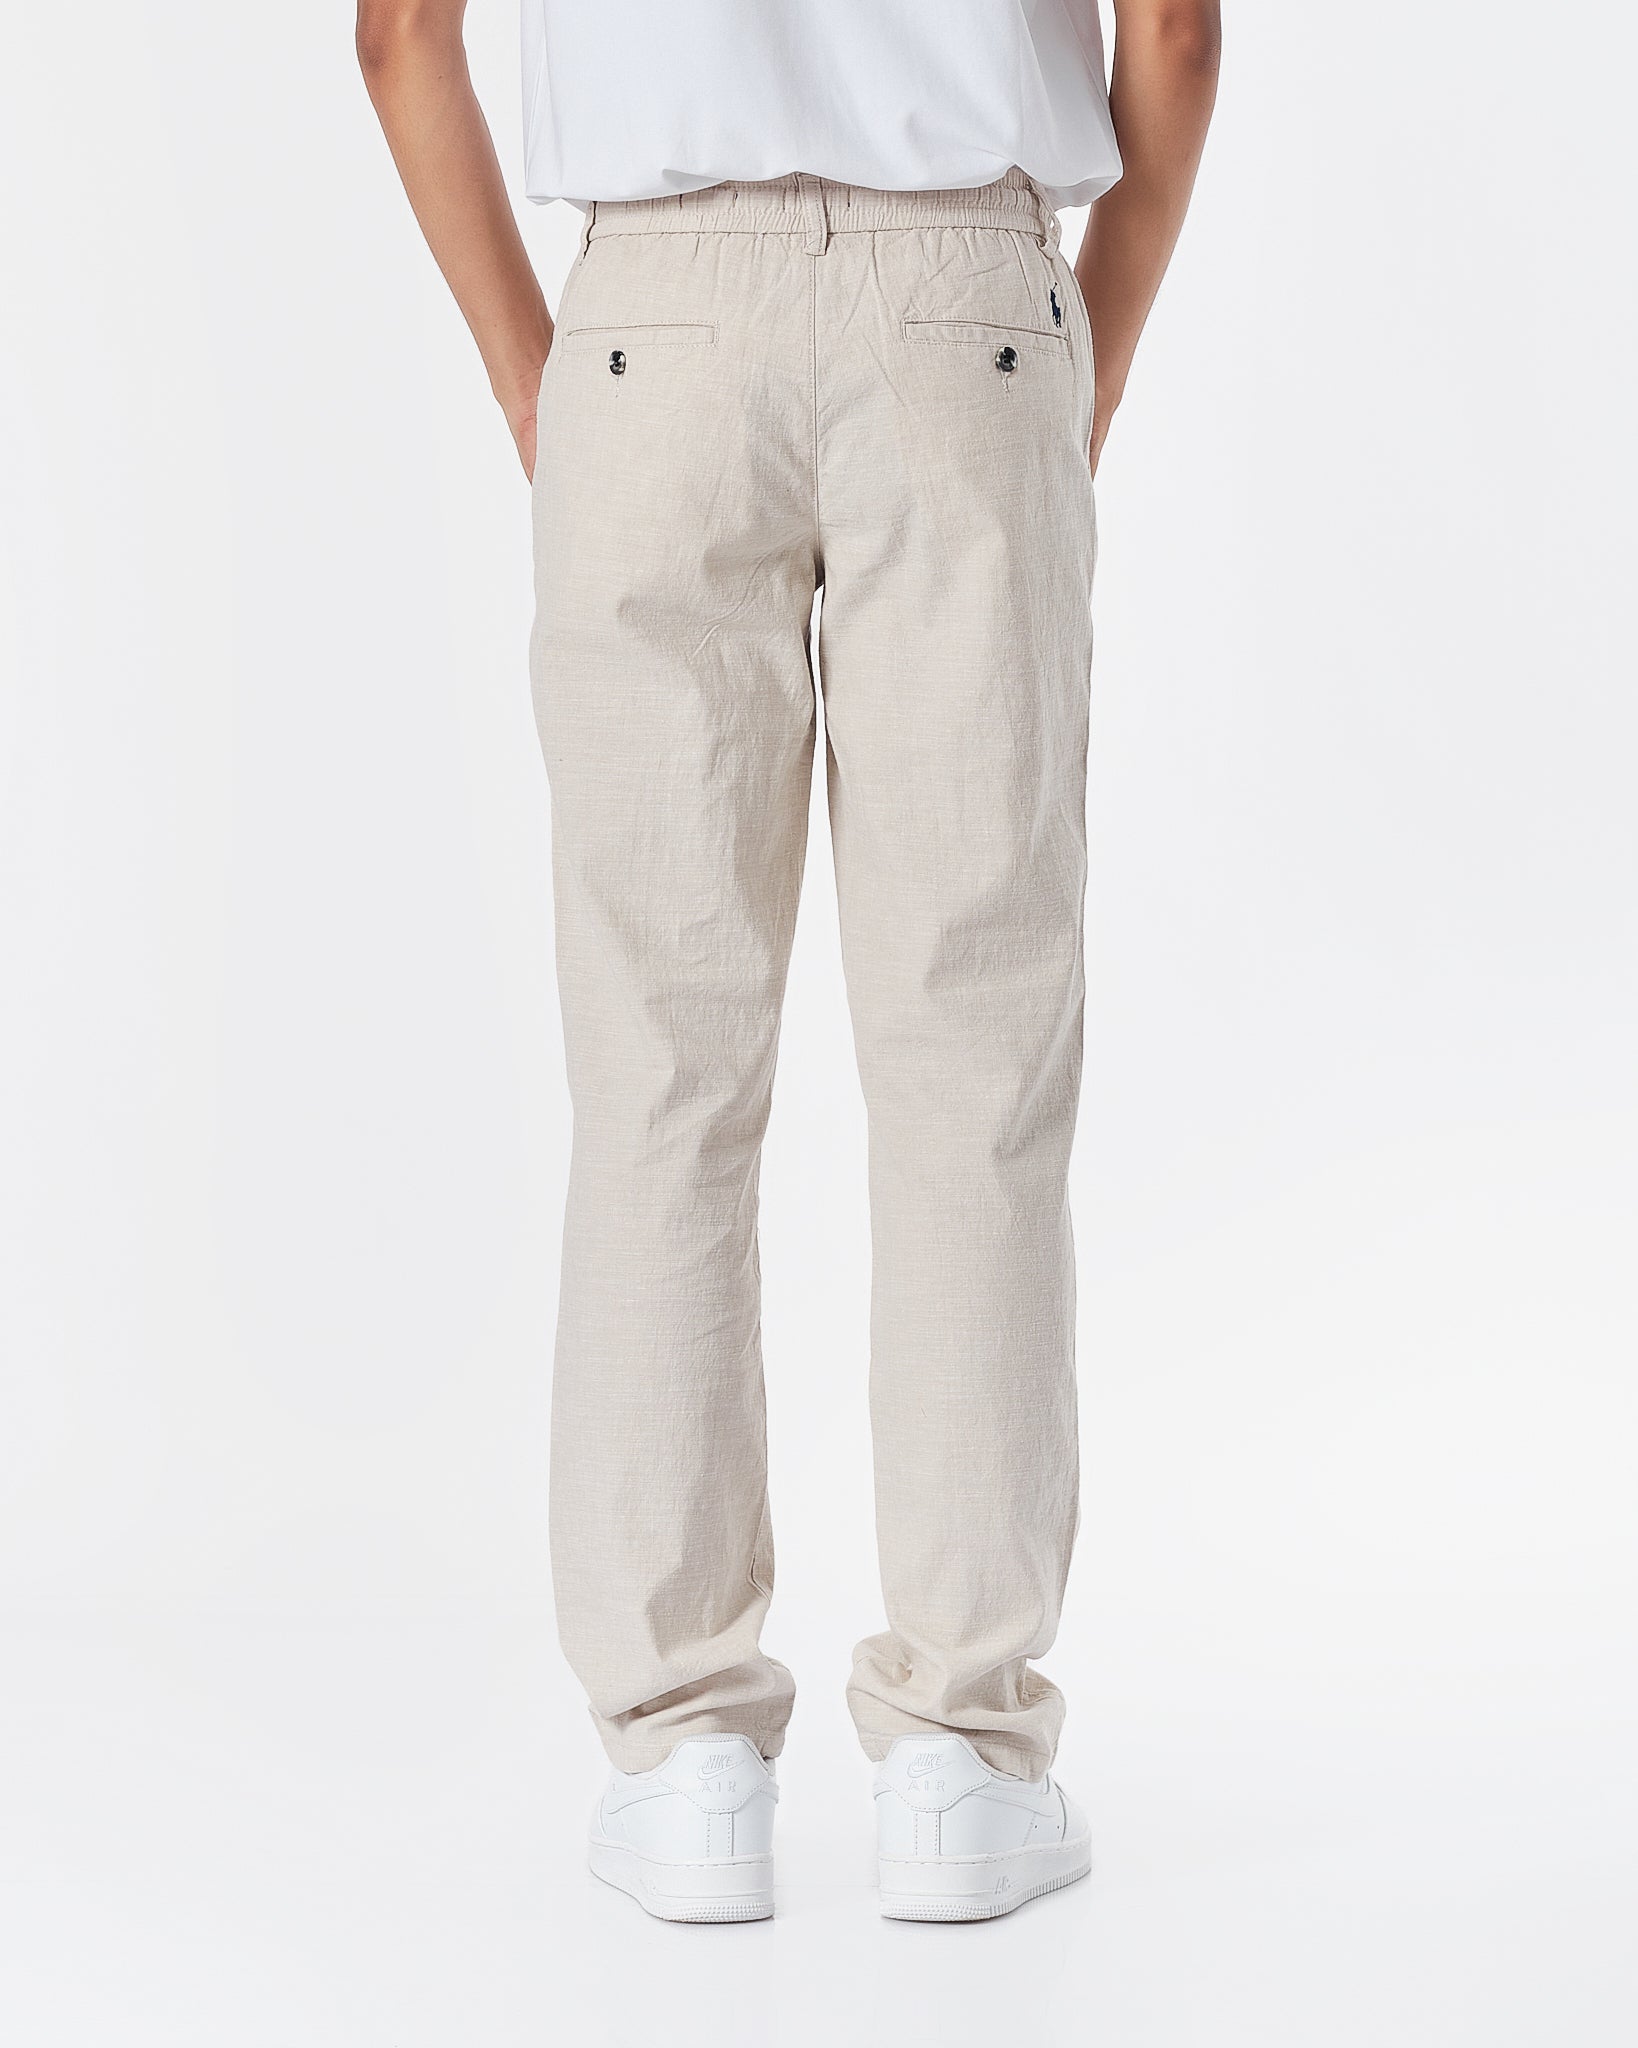 RL Linen Men White Pants 24.90